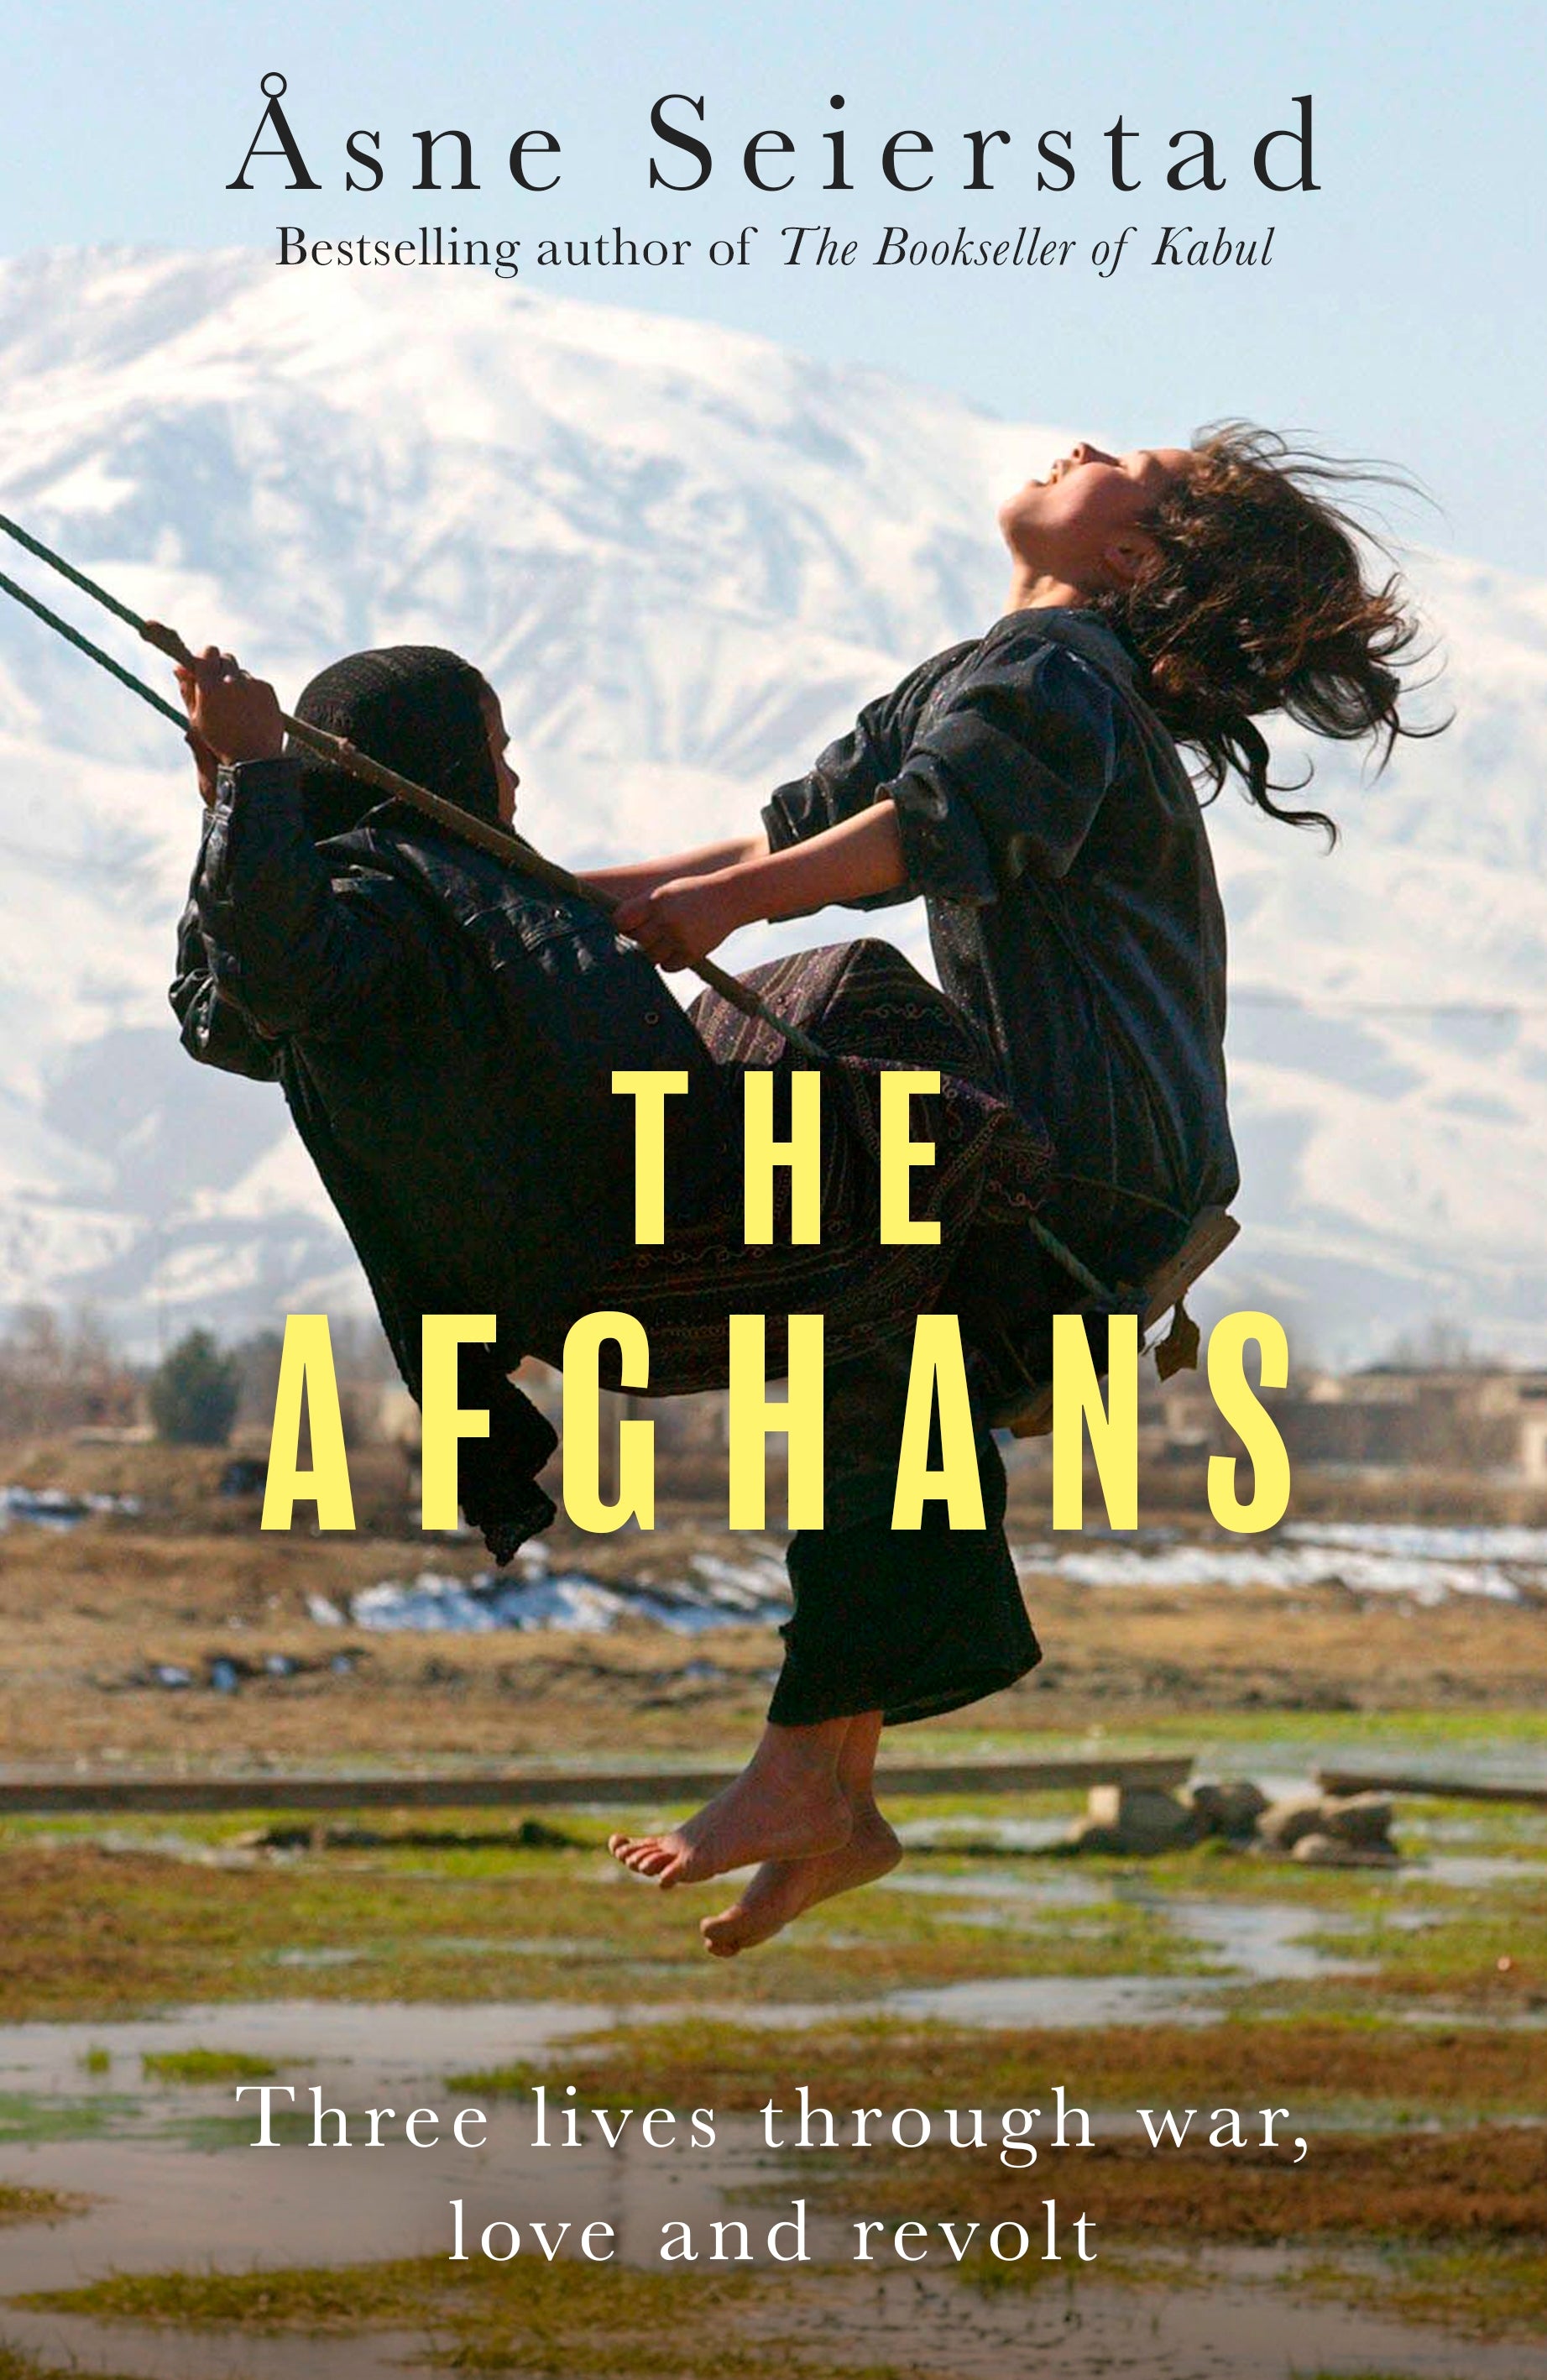 The Afghans by Åsne Seierstad